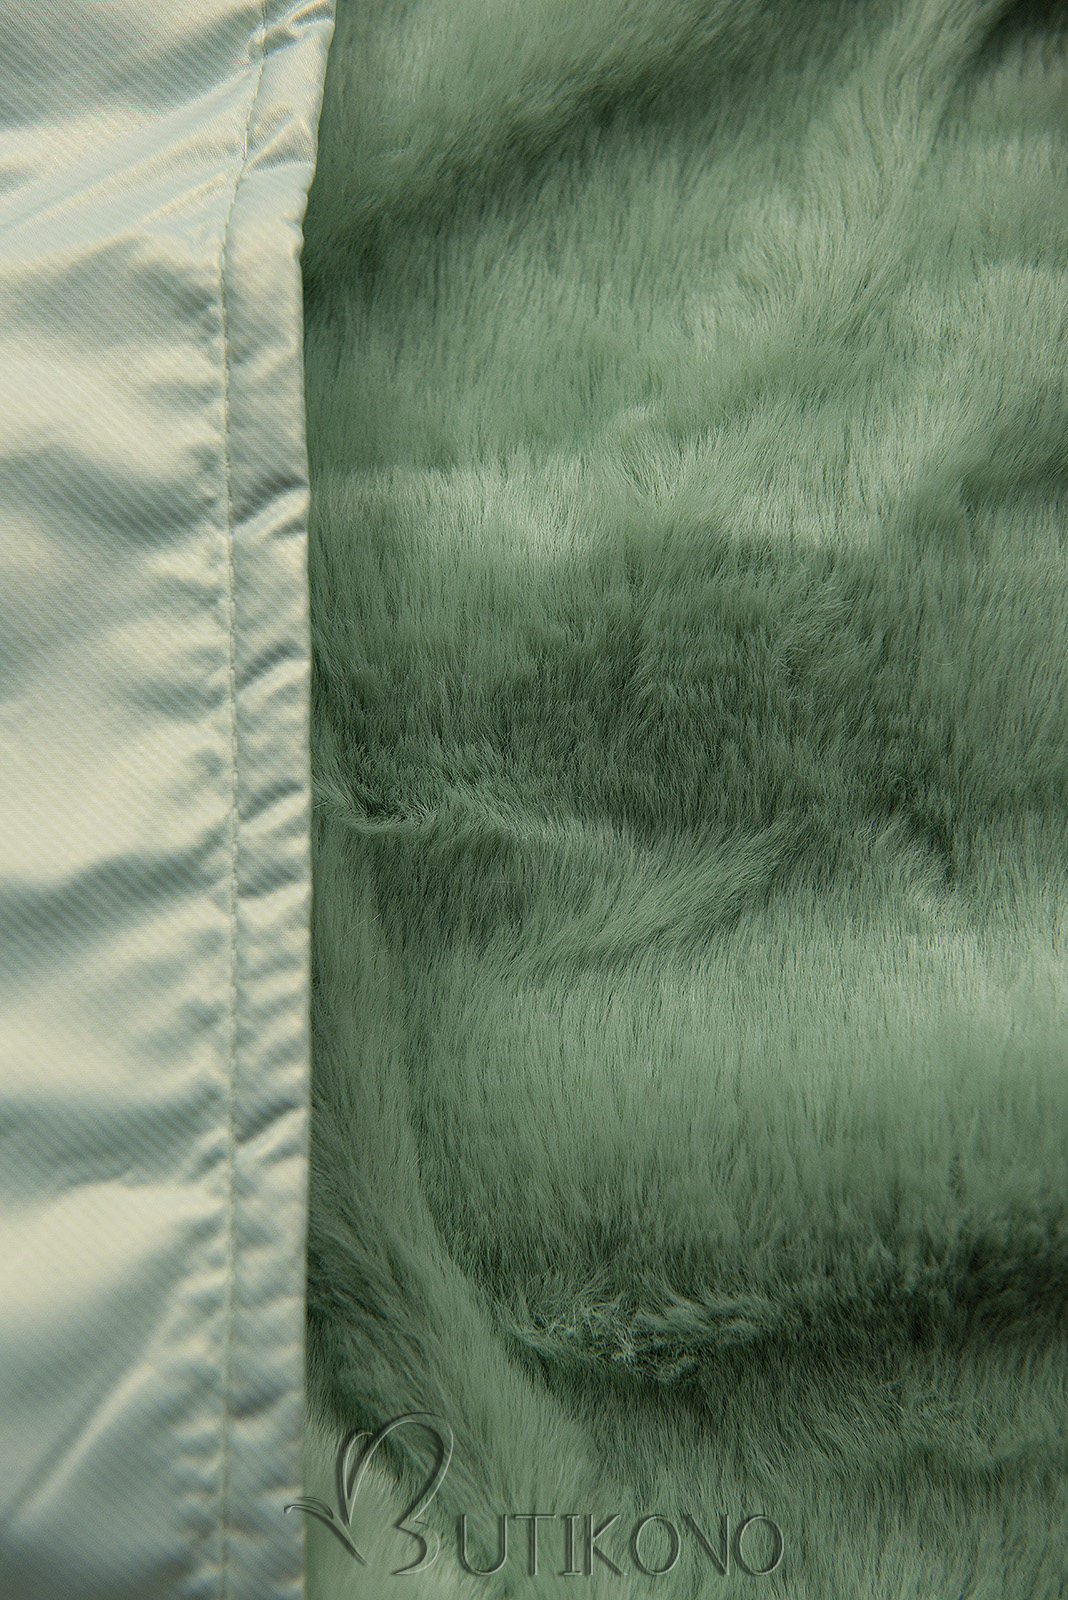 Mentolově zelená zimní bunda s kožešinovou kapucí